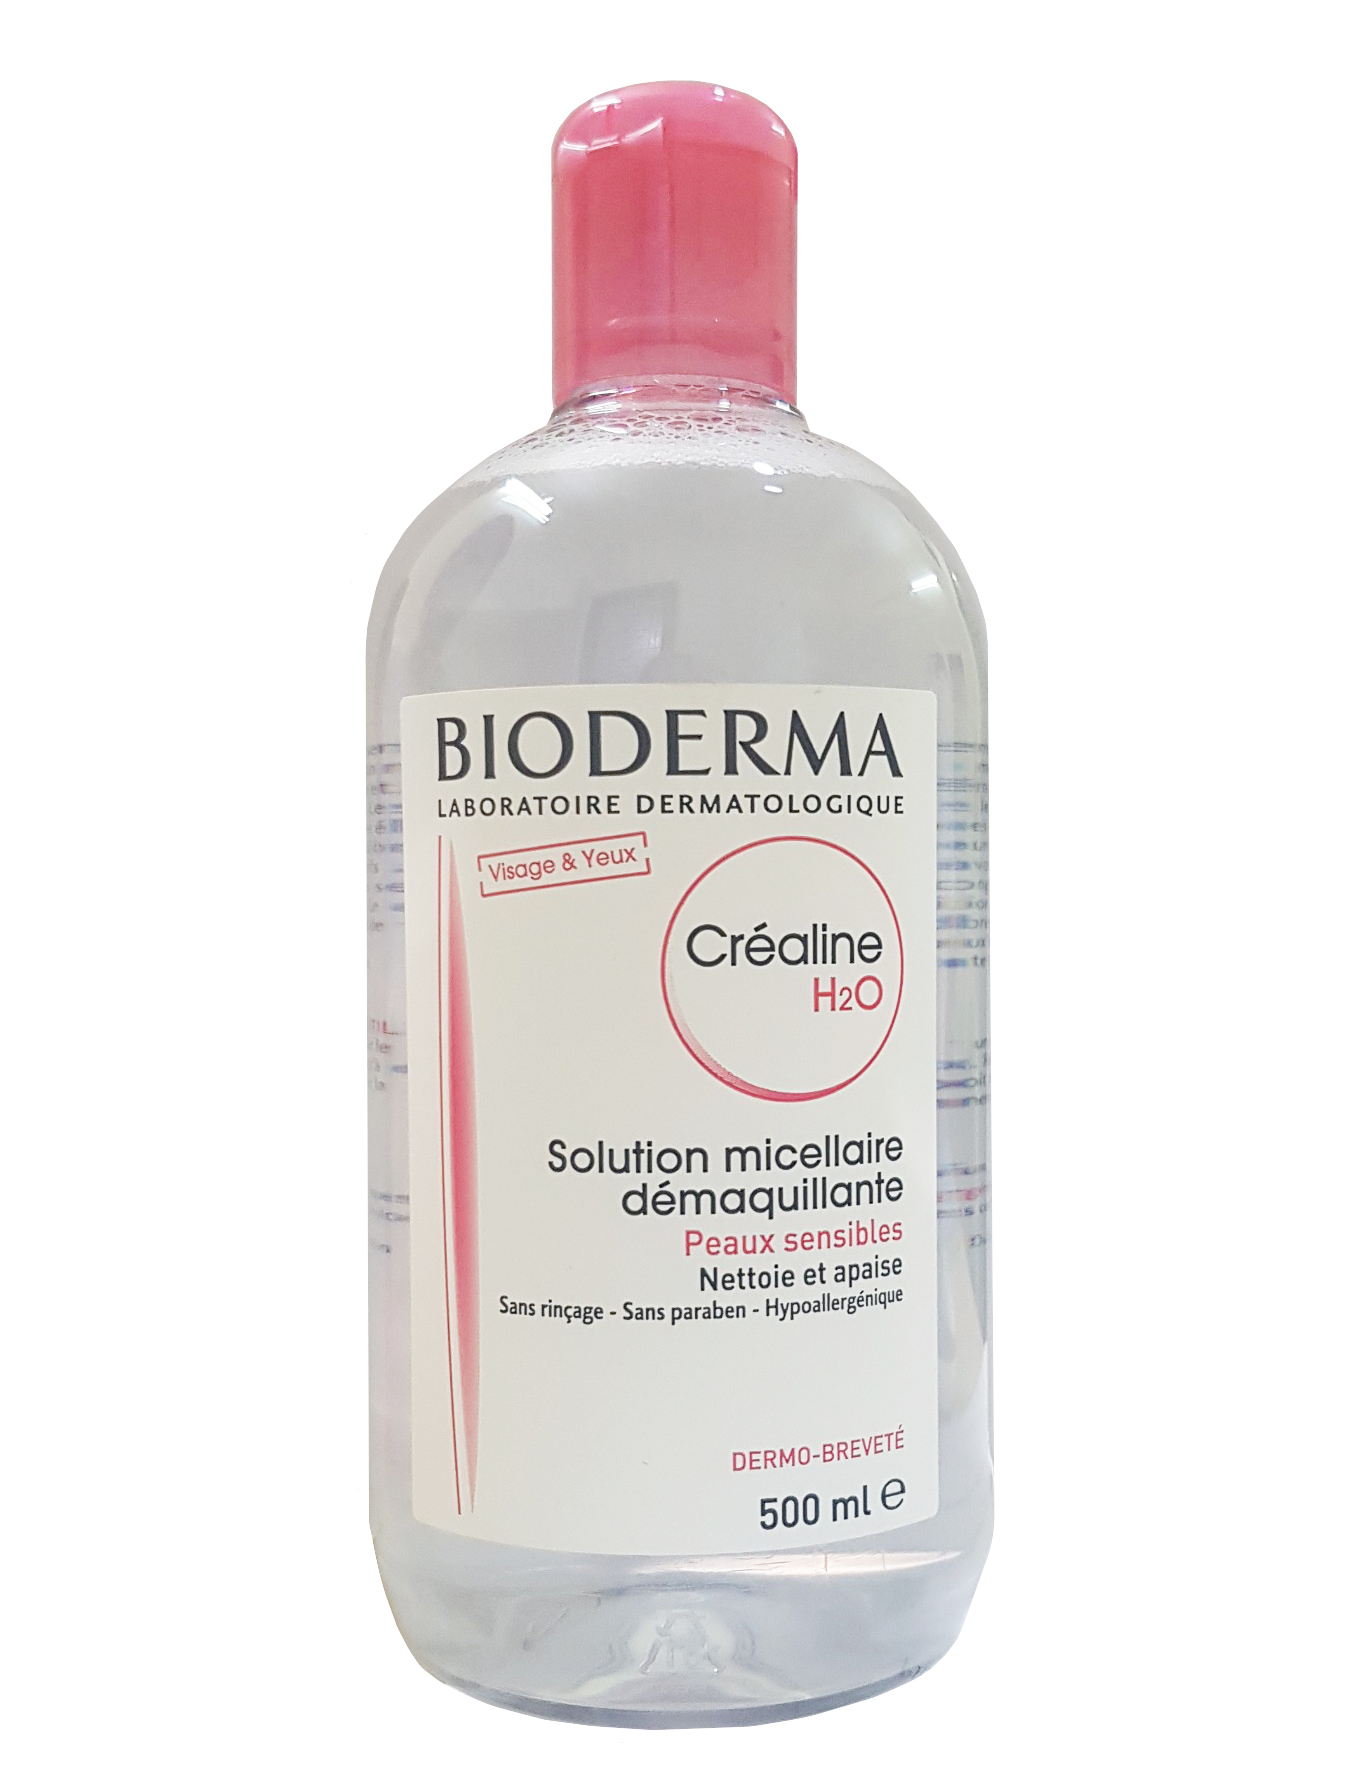 Nước tẩy trang Bioderma hồng 500ml